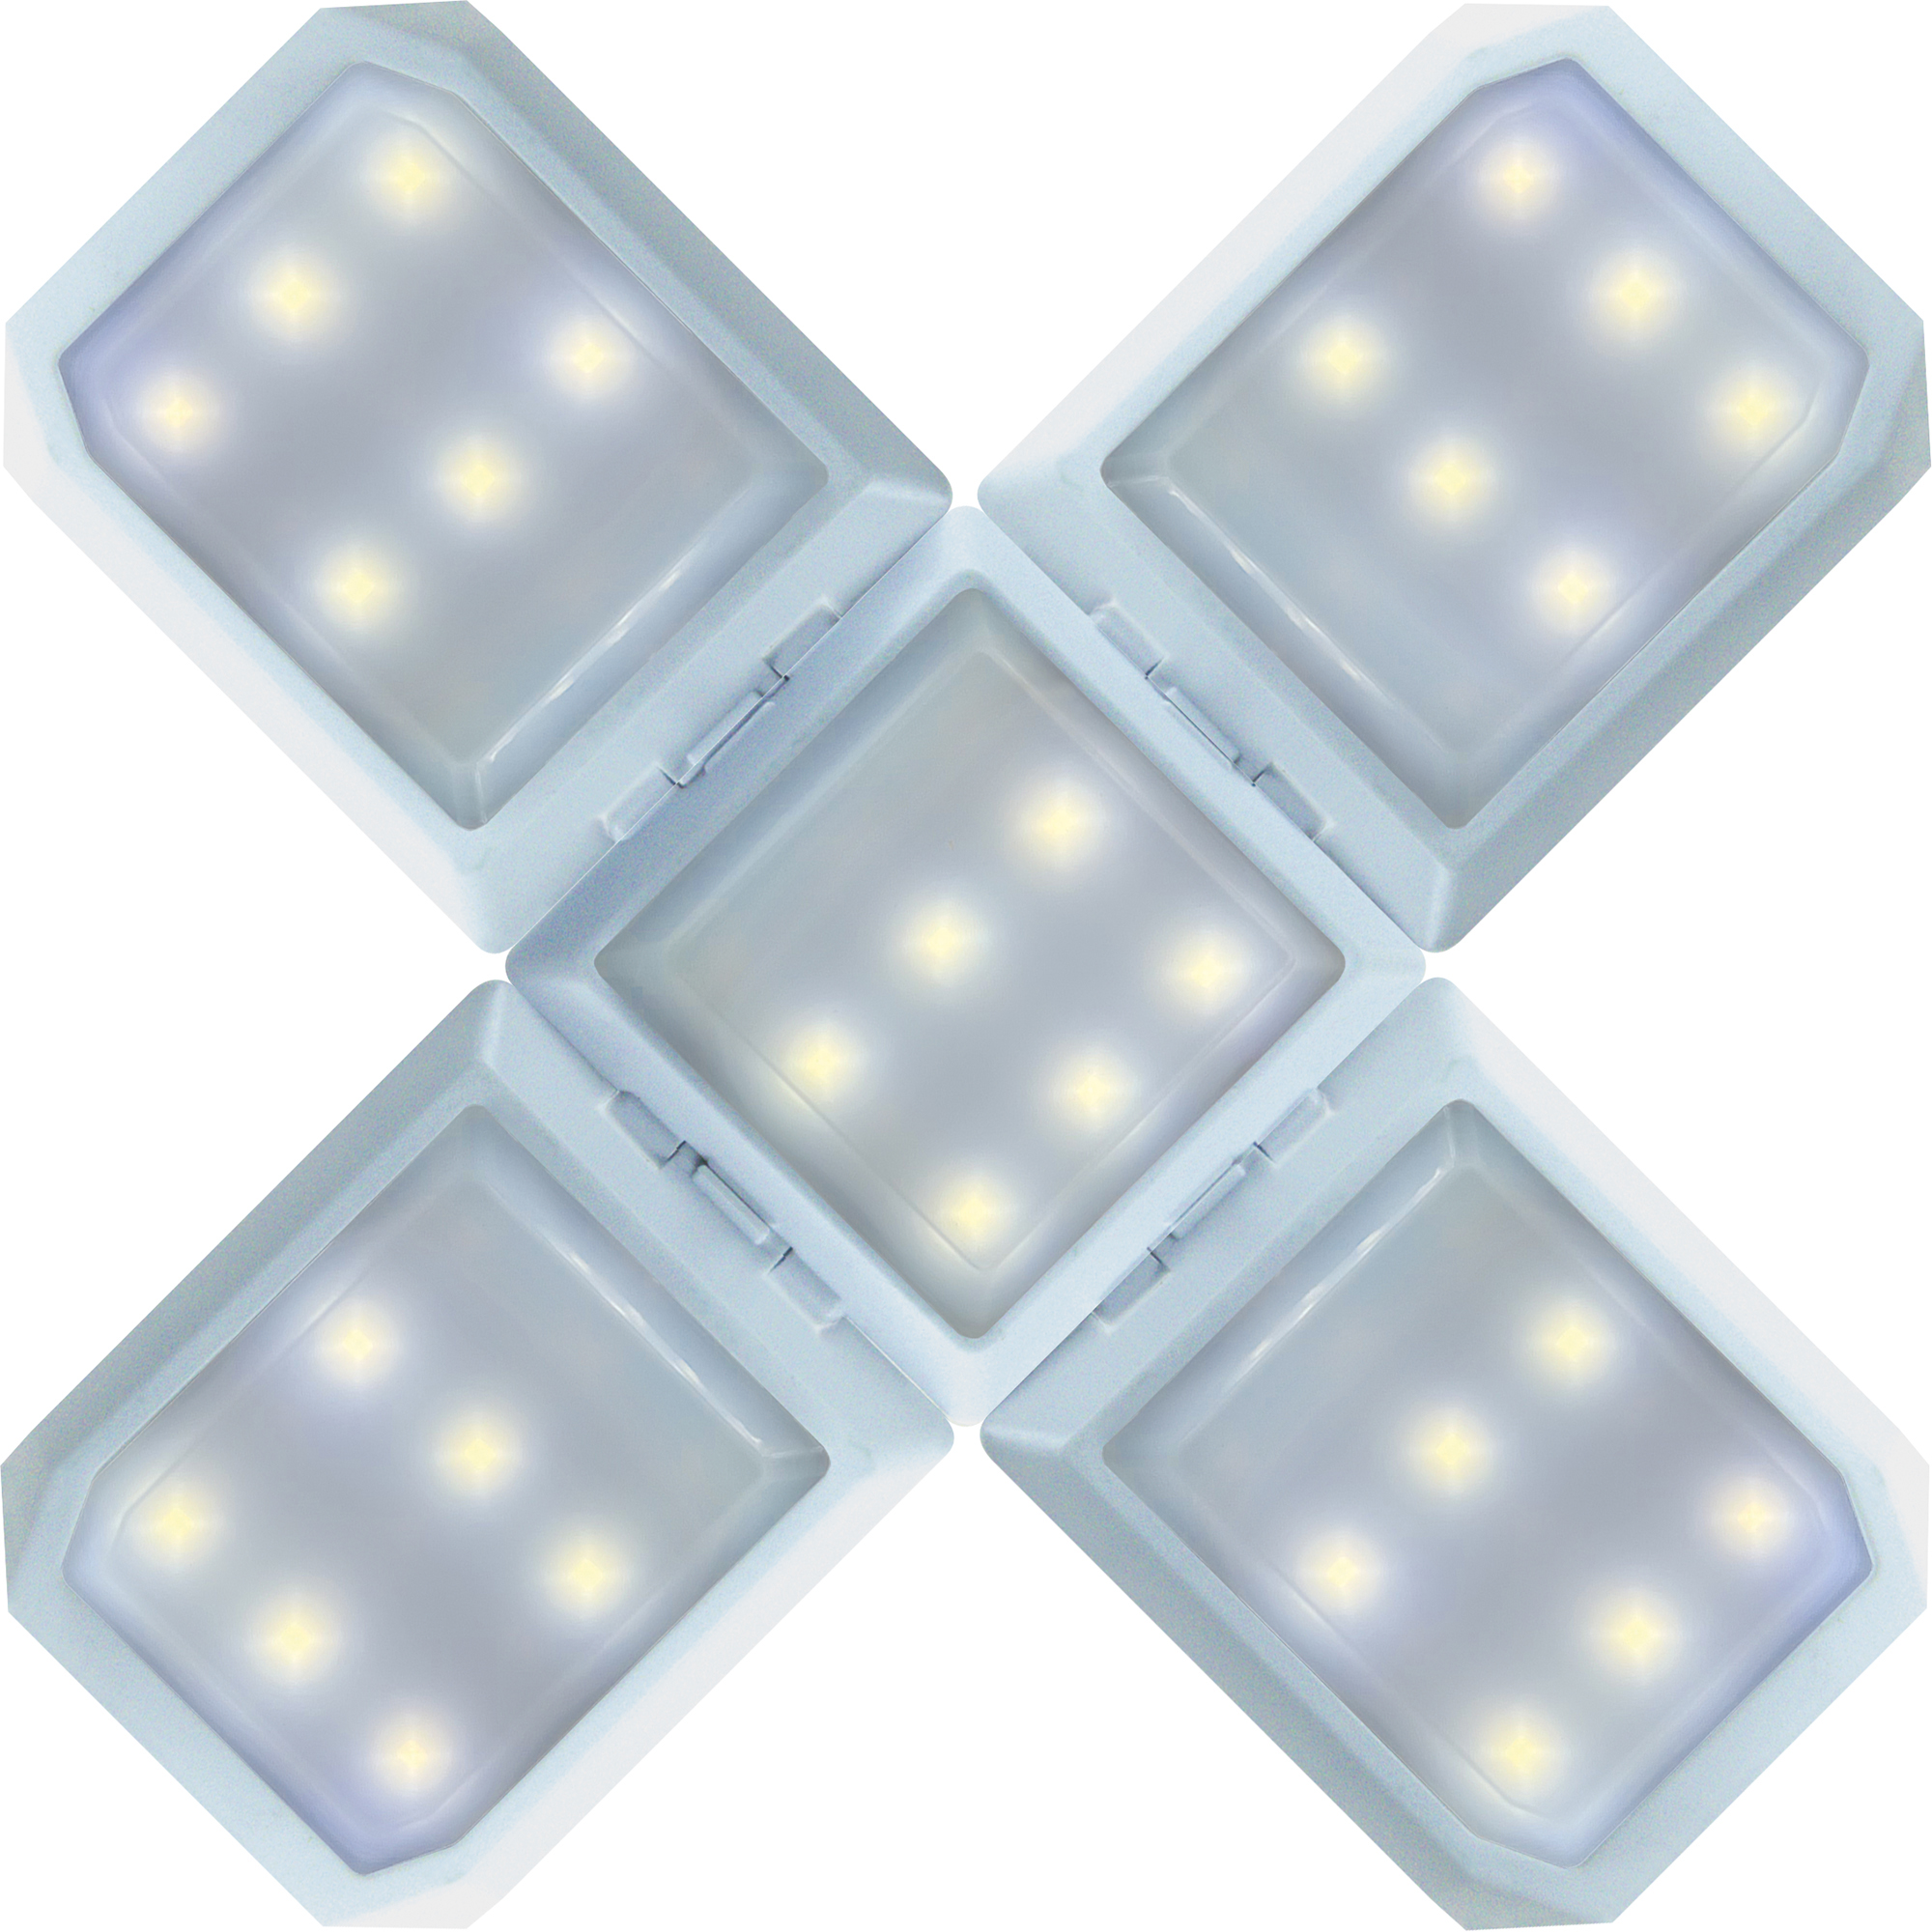 SCHWAIGER -SOLE0520- LED warmweiß, kaltweiß, mischlicht Leuchte